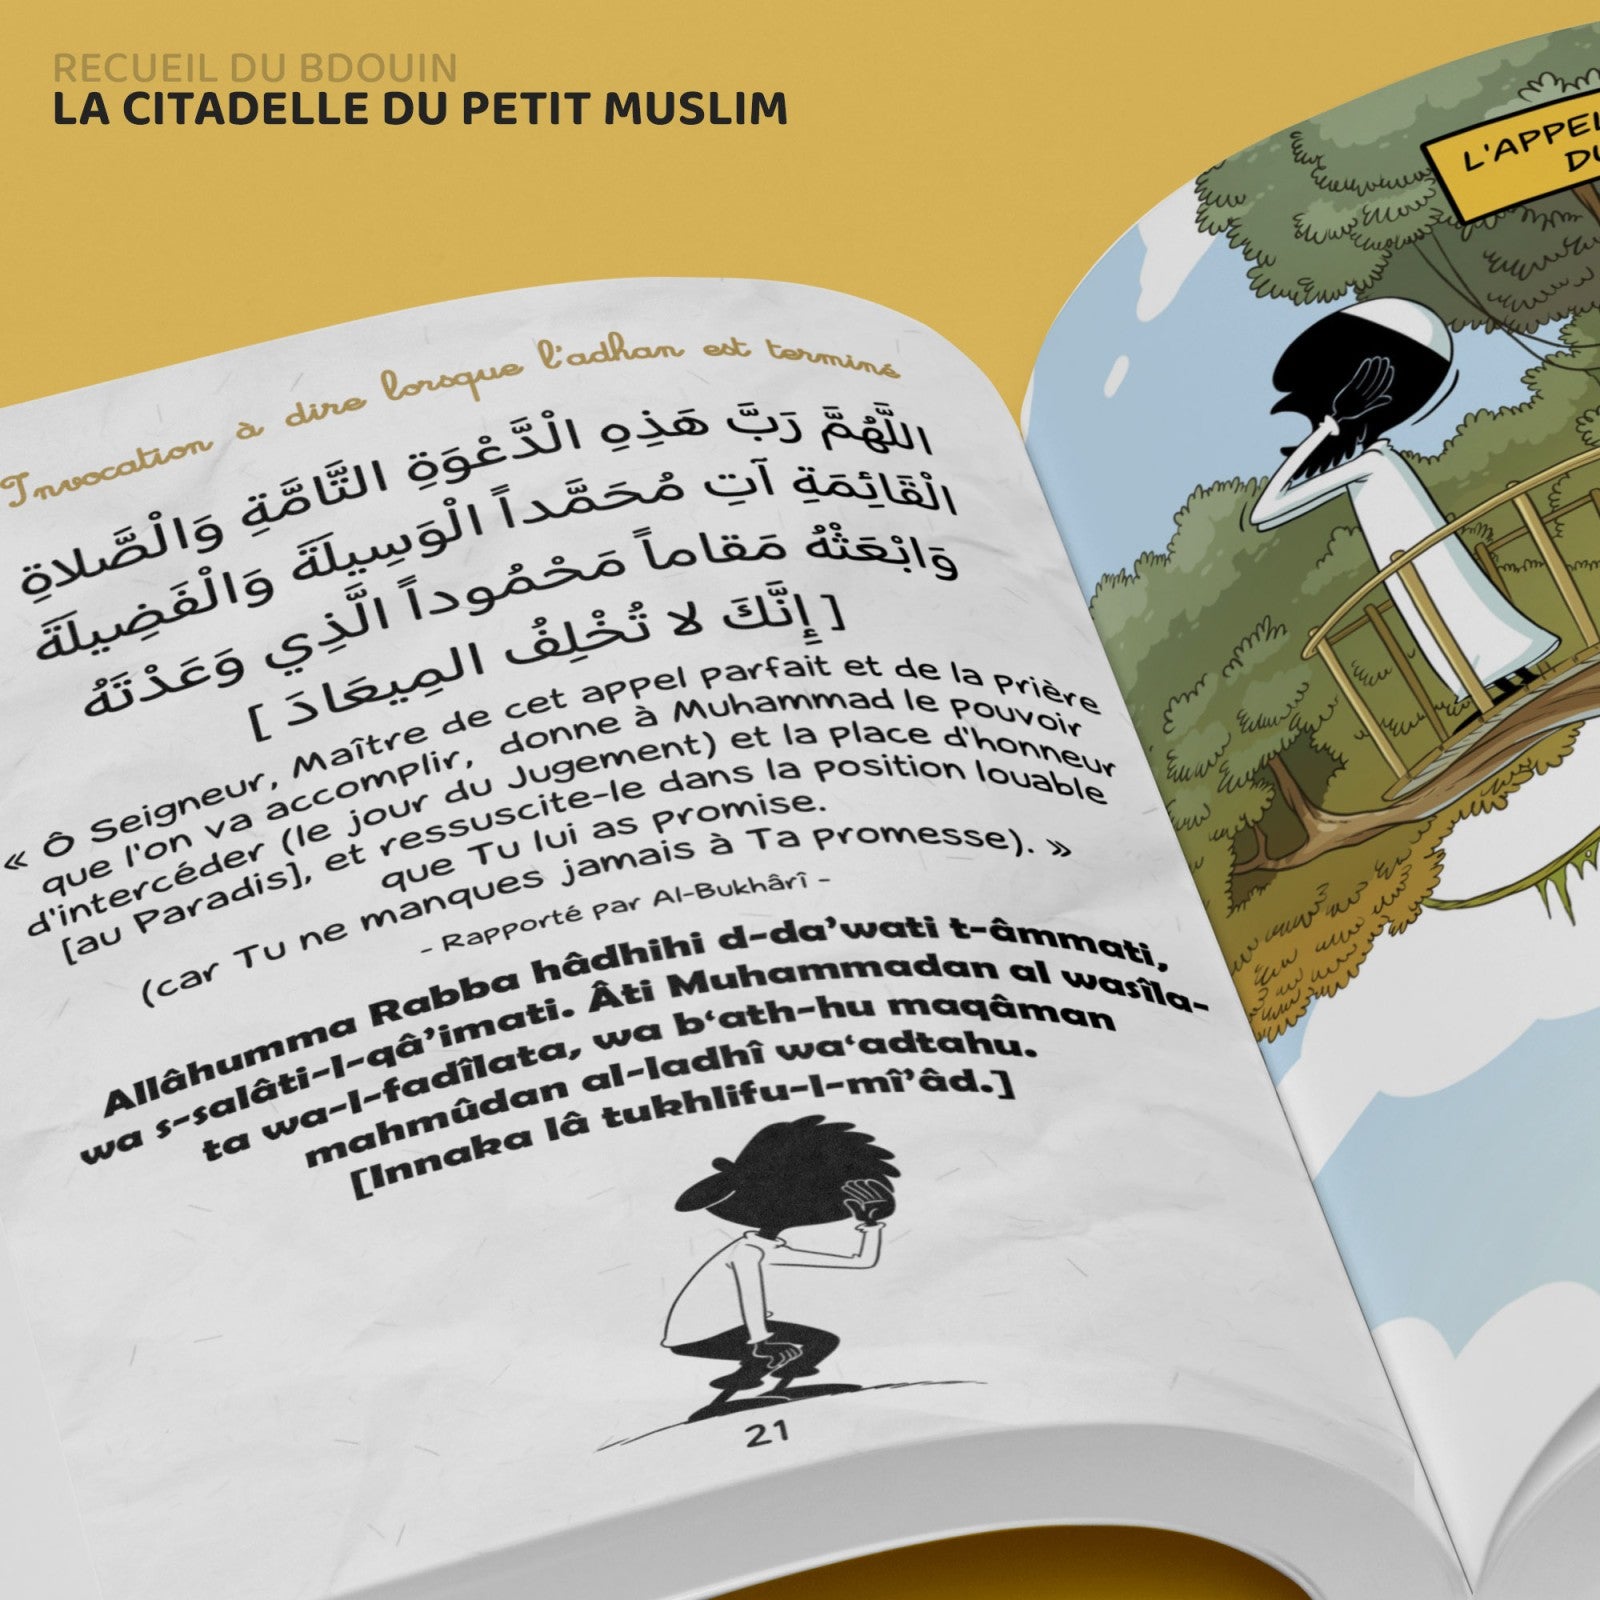 De citadel van de kleine moslim, door Norédine Allam (Frans-Arabisch-fonetisch)